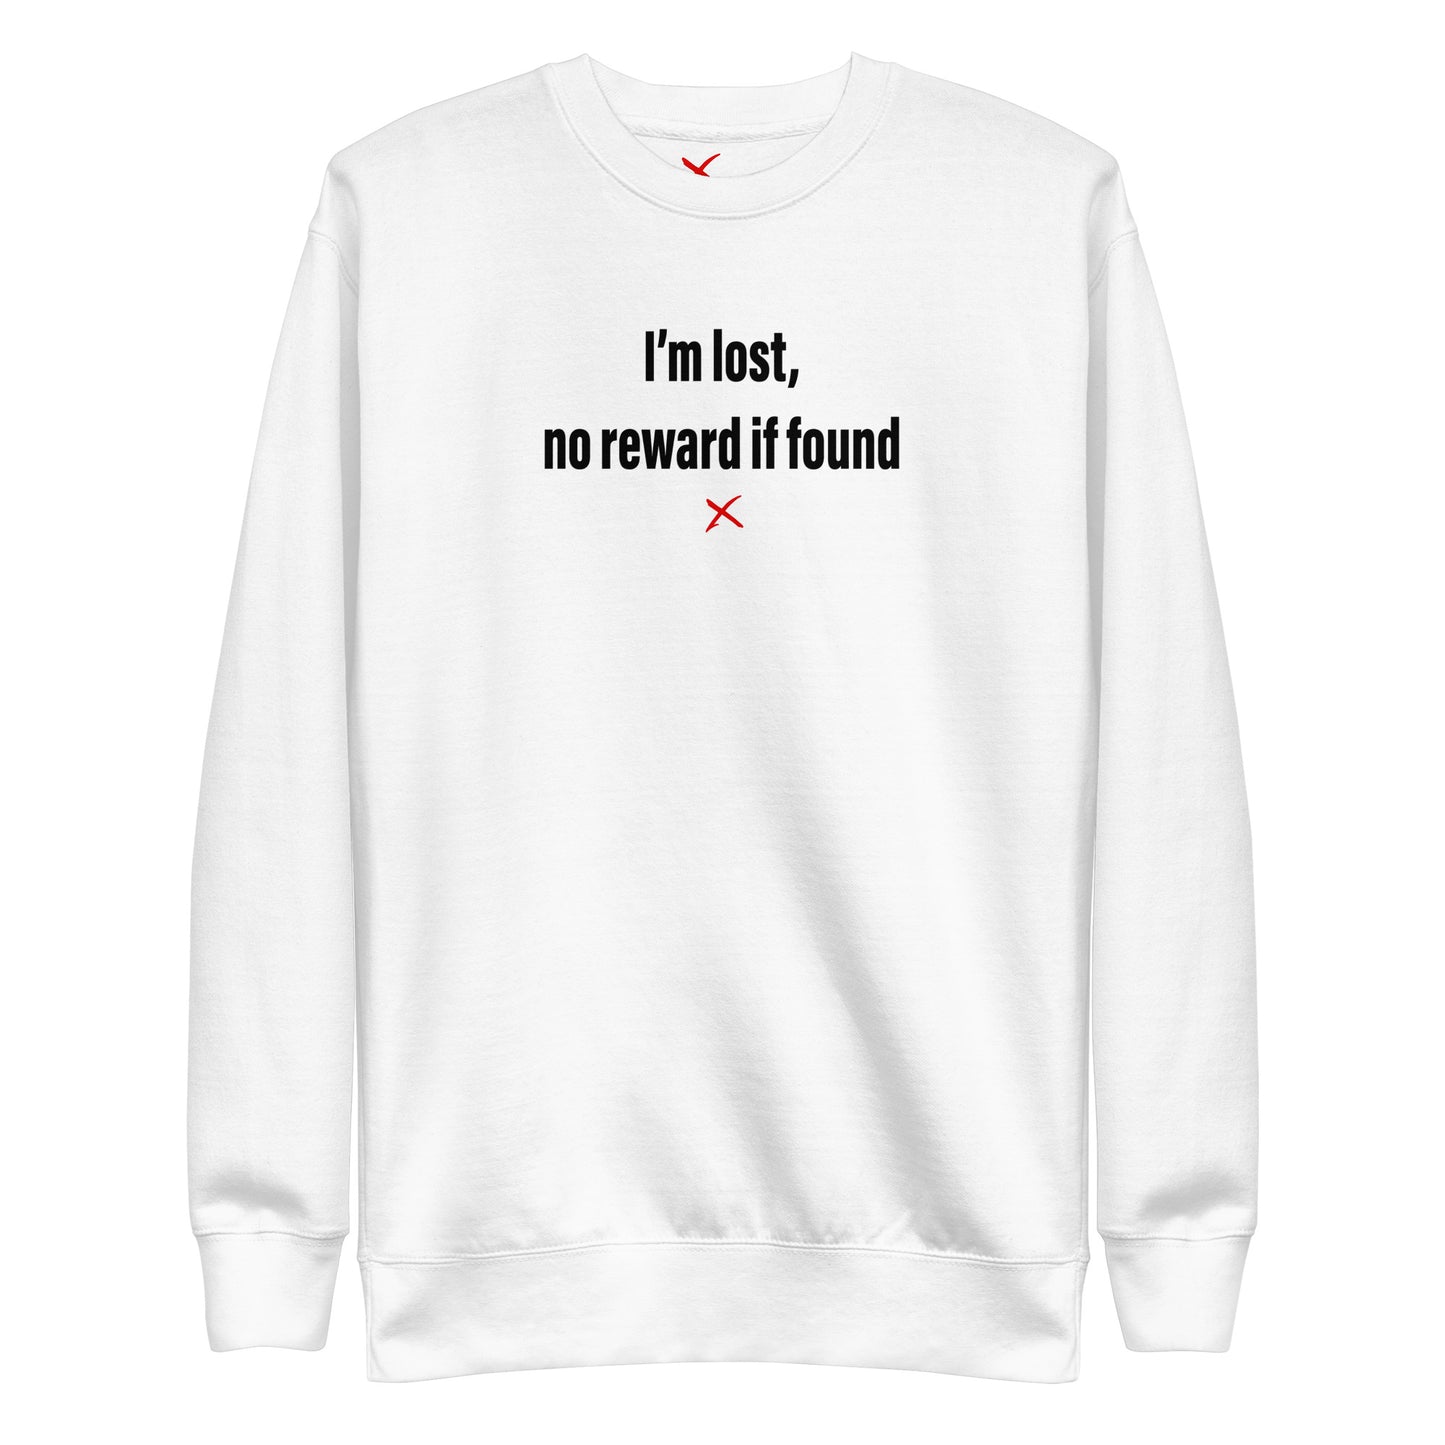 I'm lost, no reward if found - Sweatshirt